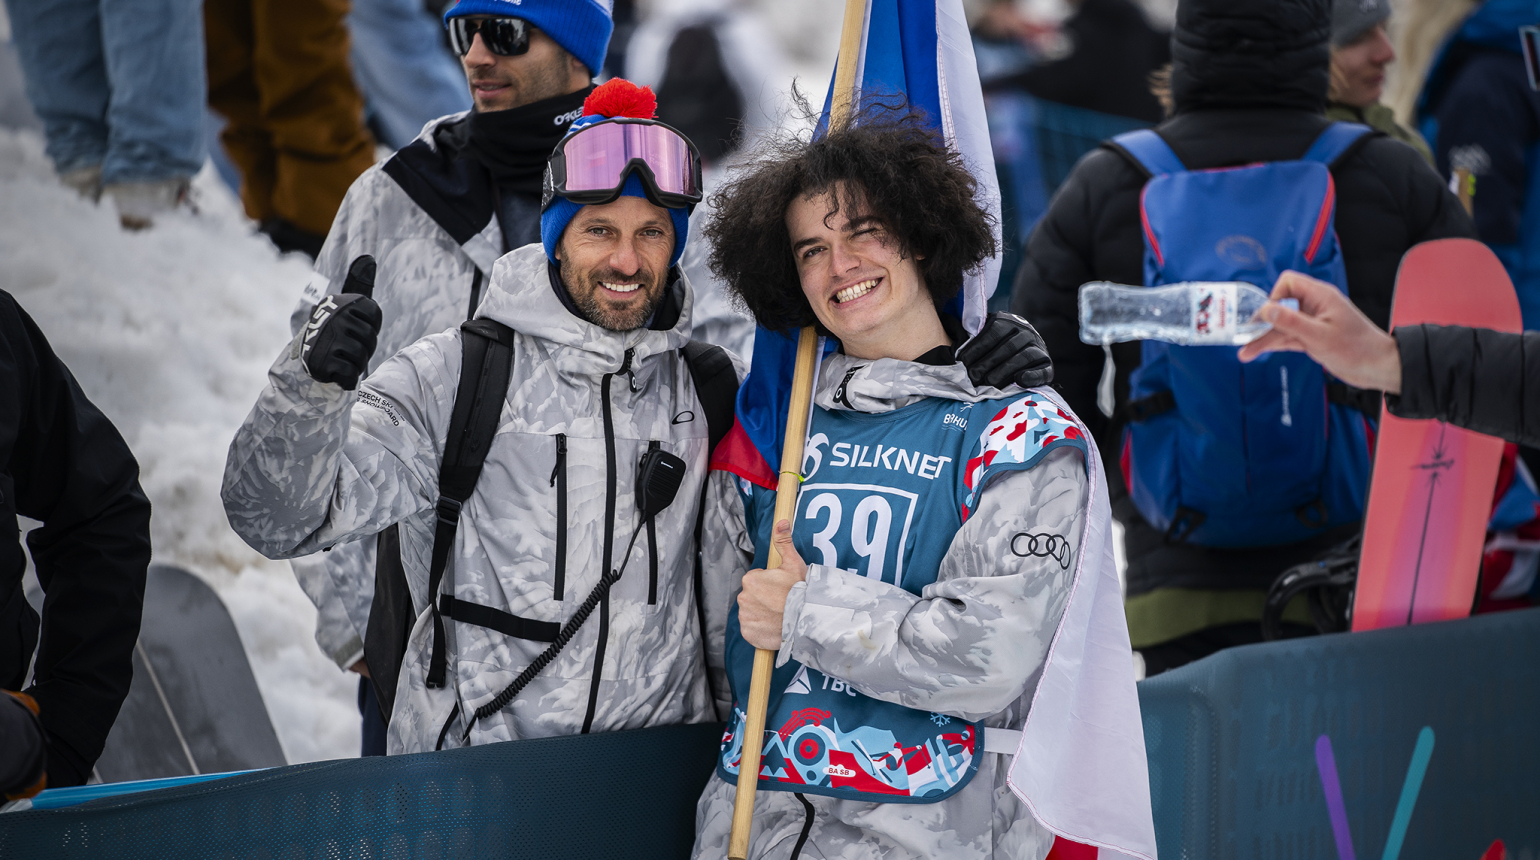 Budoucnost českého freestyle snowboardingu je růžová, věří po MS trenér reprezentace Přemysl Vida